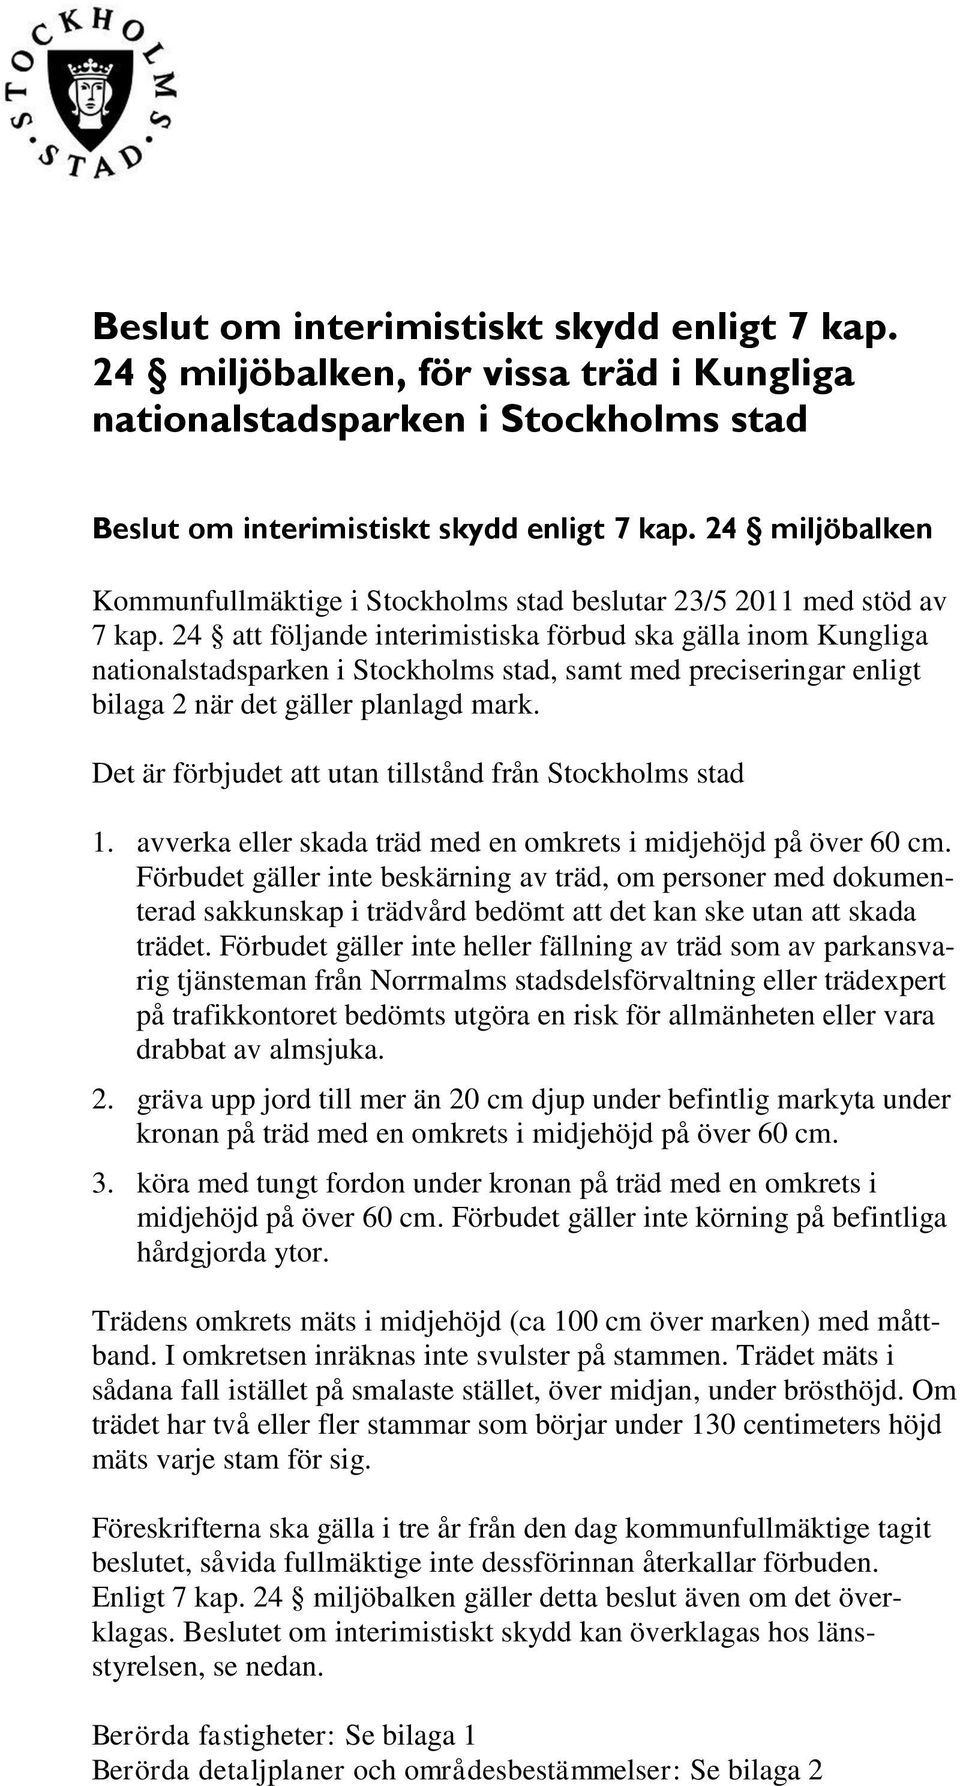 24 att följande interimistiska förbud ska gälla inom Kungliga nationalstadsparken i Stockholms stad, samt med preciseringar enligt bilaga 2 när det gäller planlagd mark.